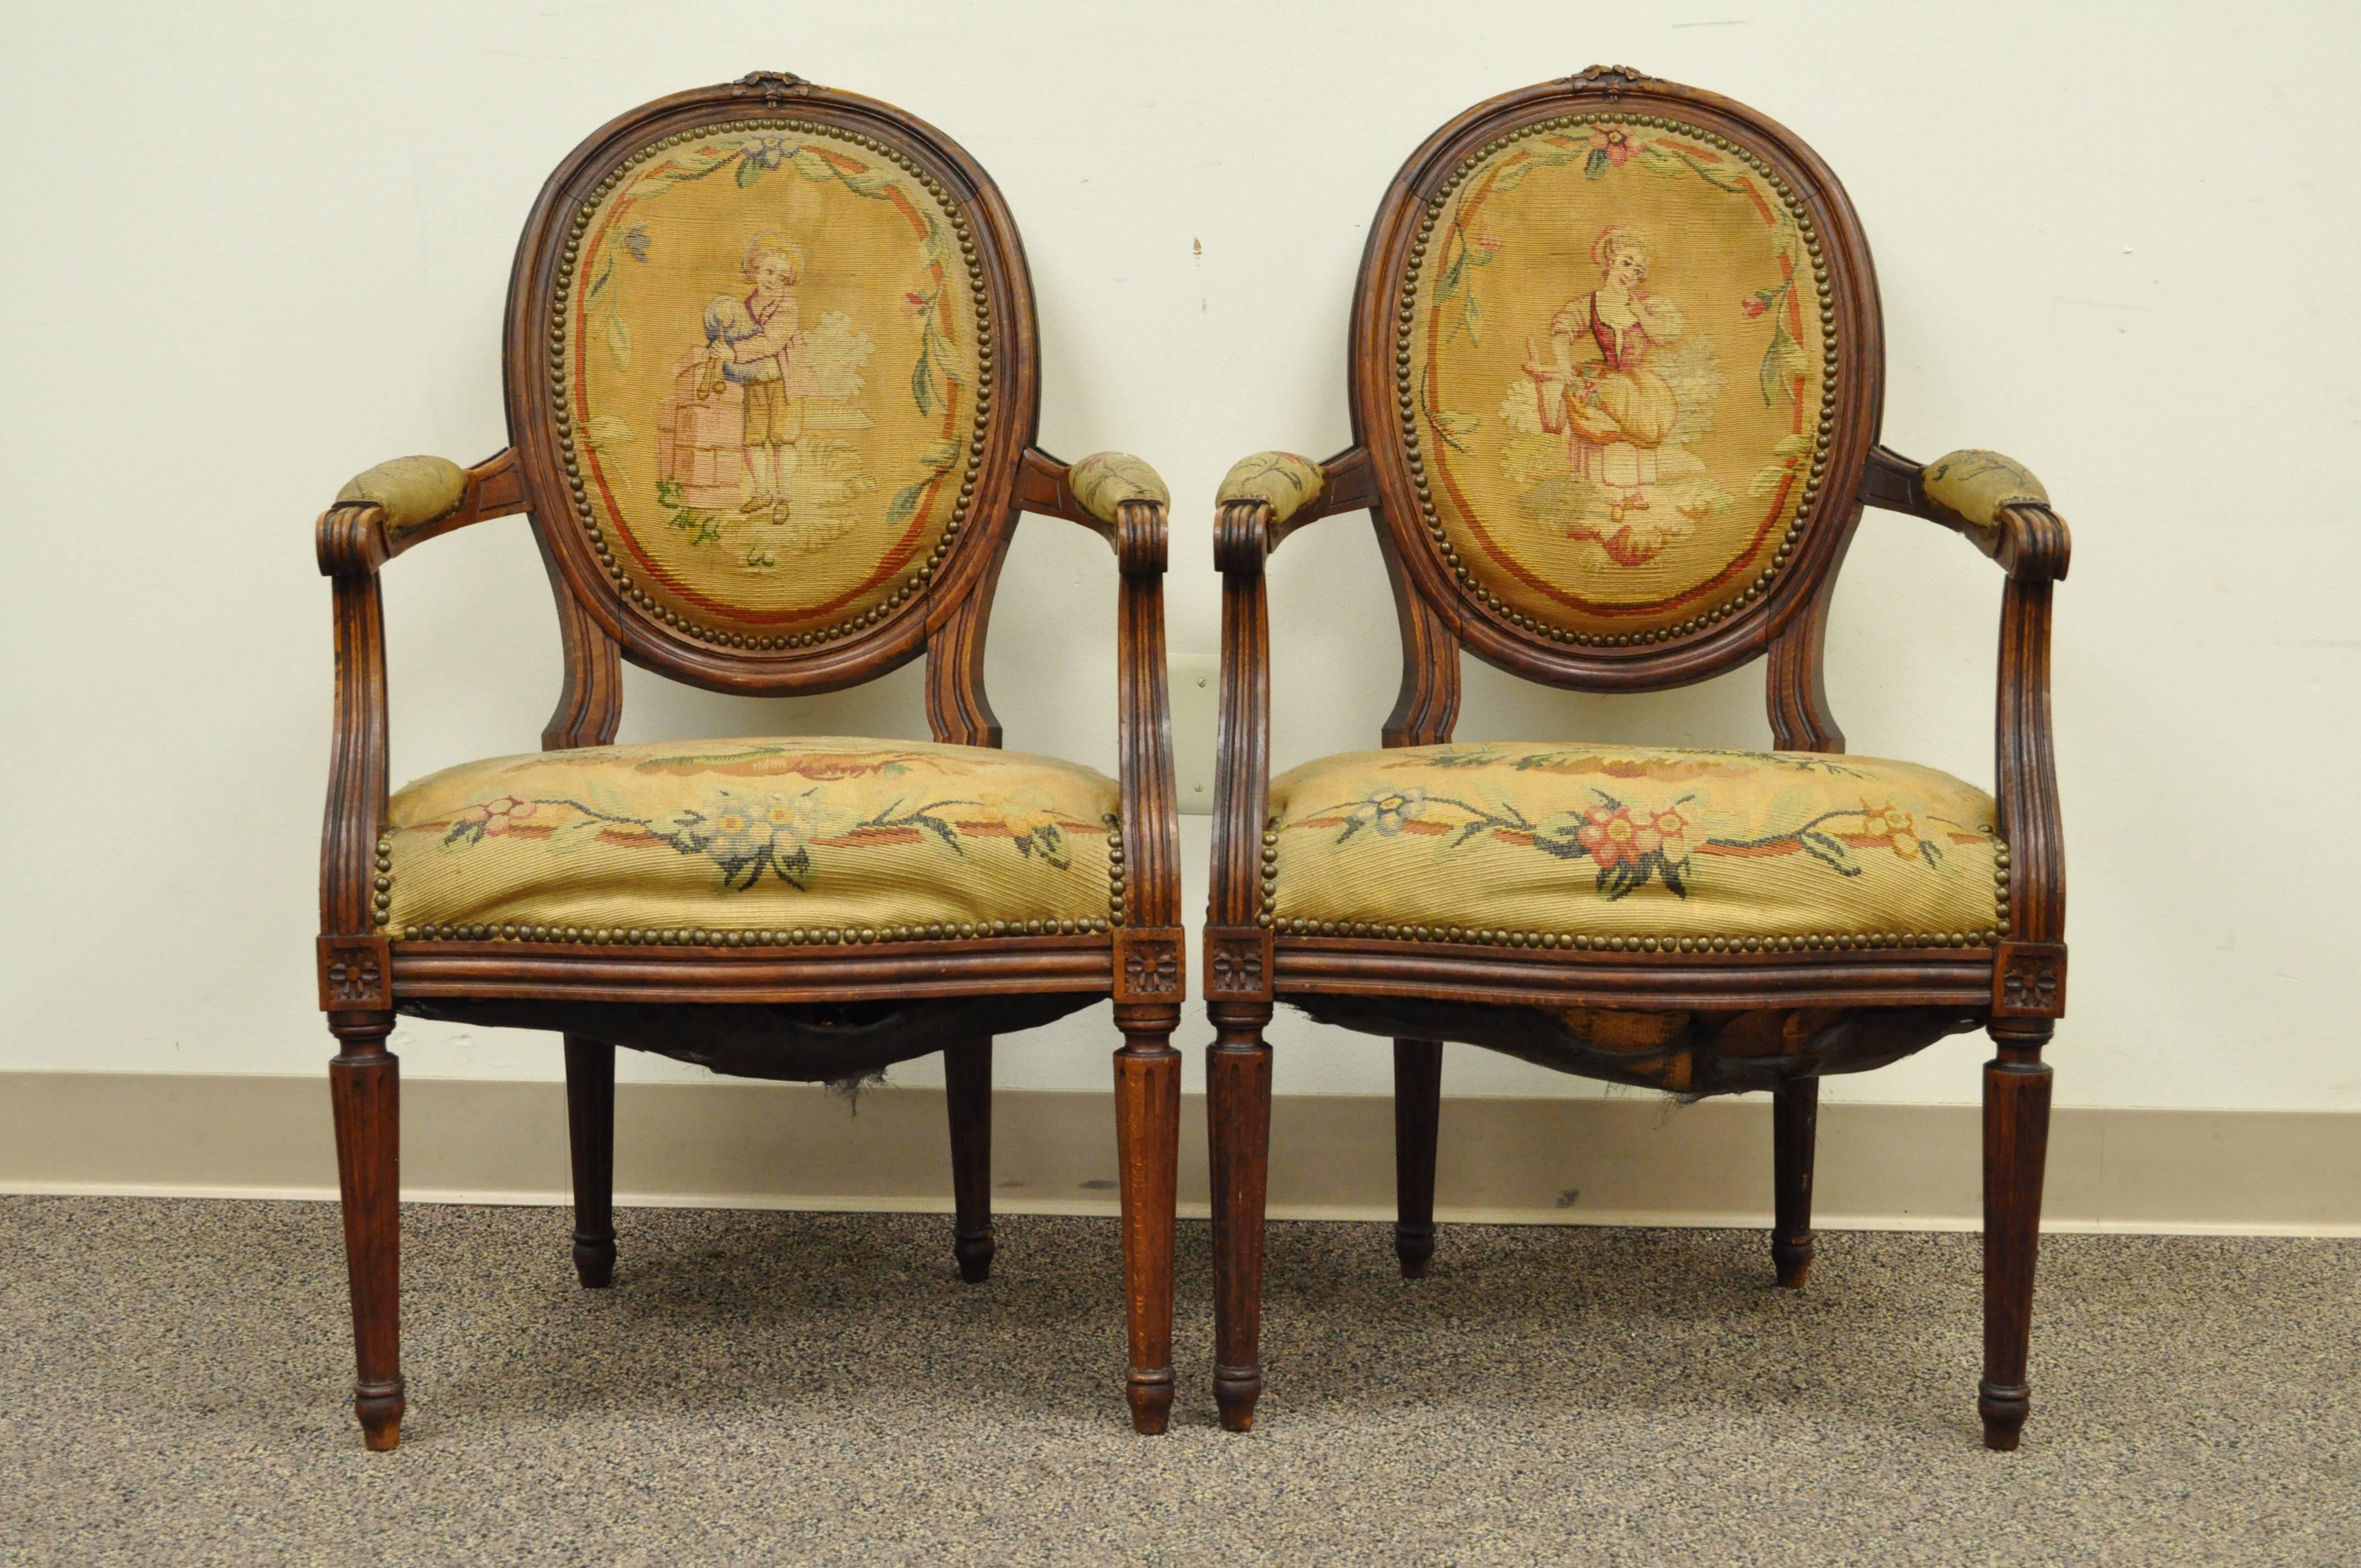 Zwei französische Nussbaumsessel im Louis-XVI-Stil aus dem 19. Jahrhundert mit originalen Nadelspitzenbezügen. Die Stühle haben gepolsterte Armlehnen, Rückenlehnen mit Rillen, Bogenschnitzereien und kannelierte Beine. Jeder Stuhl hat